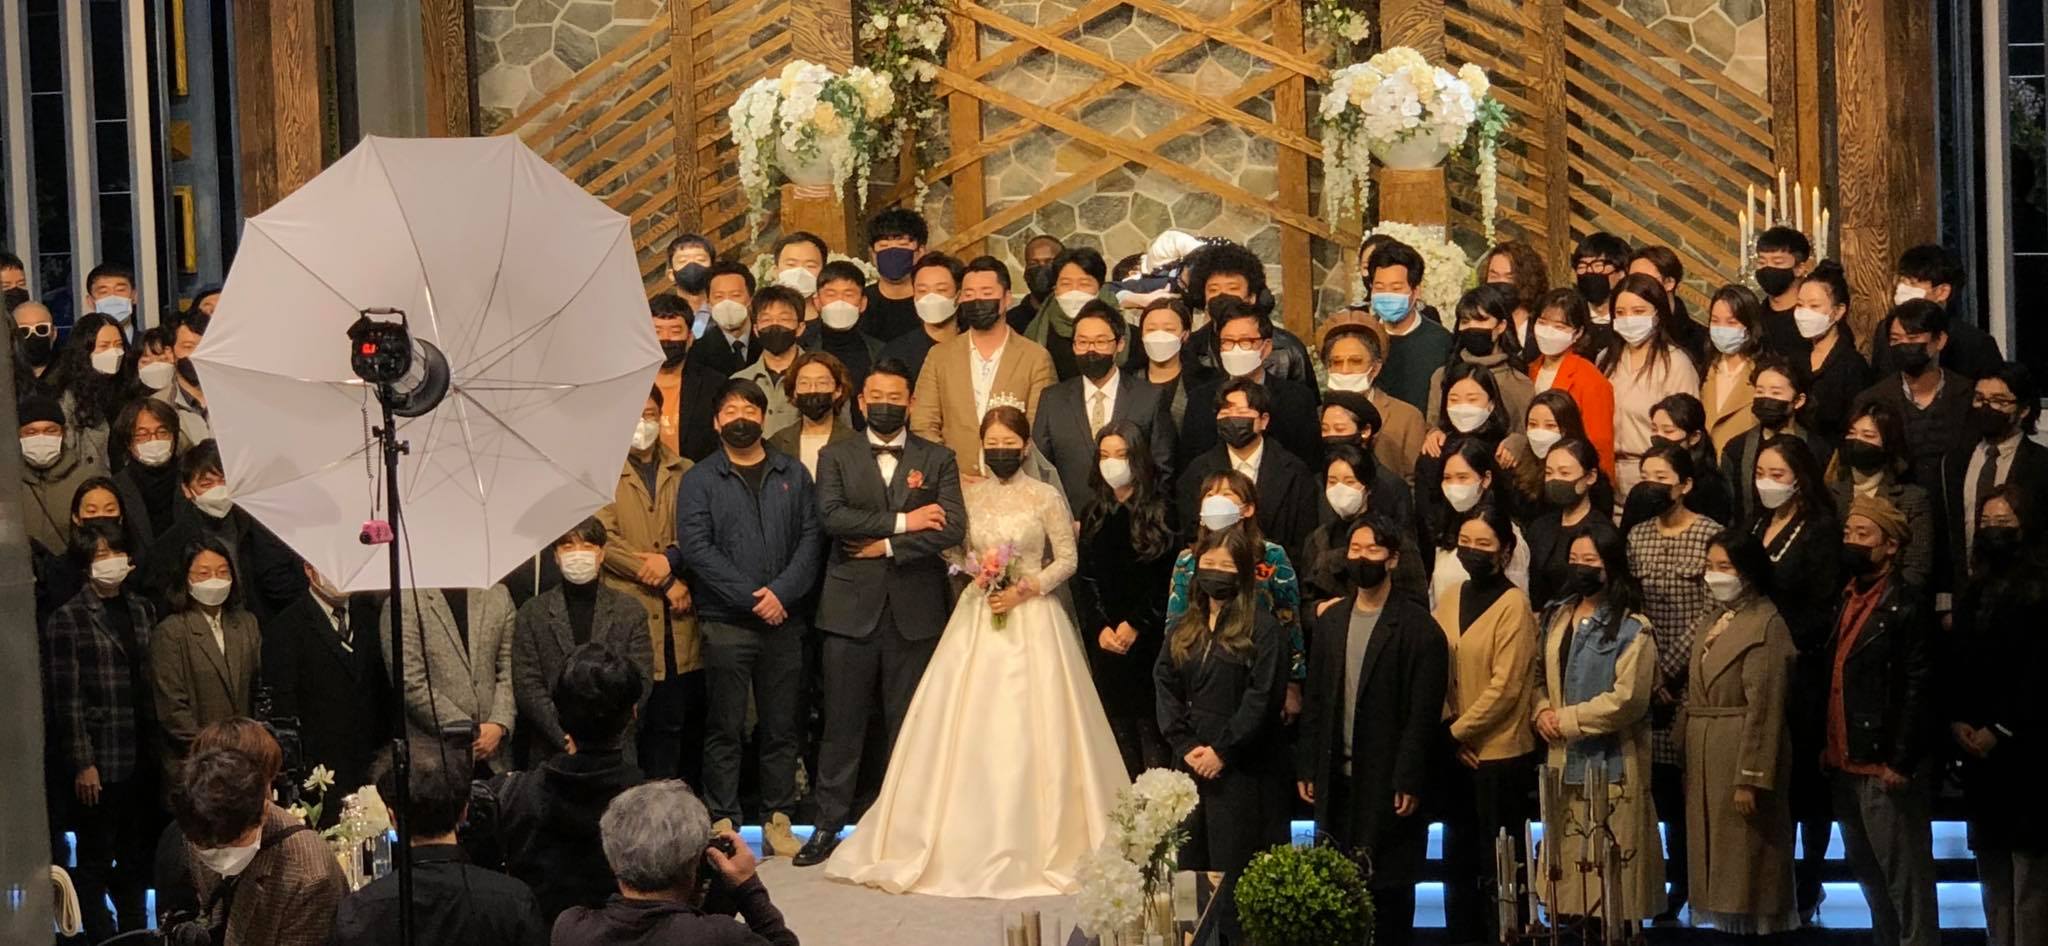 Virus Codiv-19 đang lây lan với tốc độ chóng mặt tại Hàn Quốc. Cô dâu, chú rể cùng khách mời tham dự đám cưới được tổ chức trong thời gian này đều đeo khẩu trang.